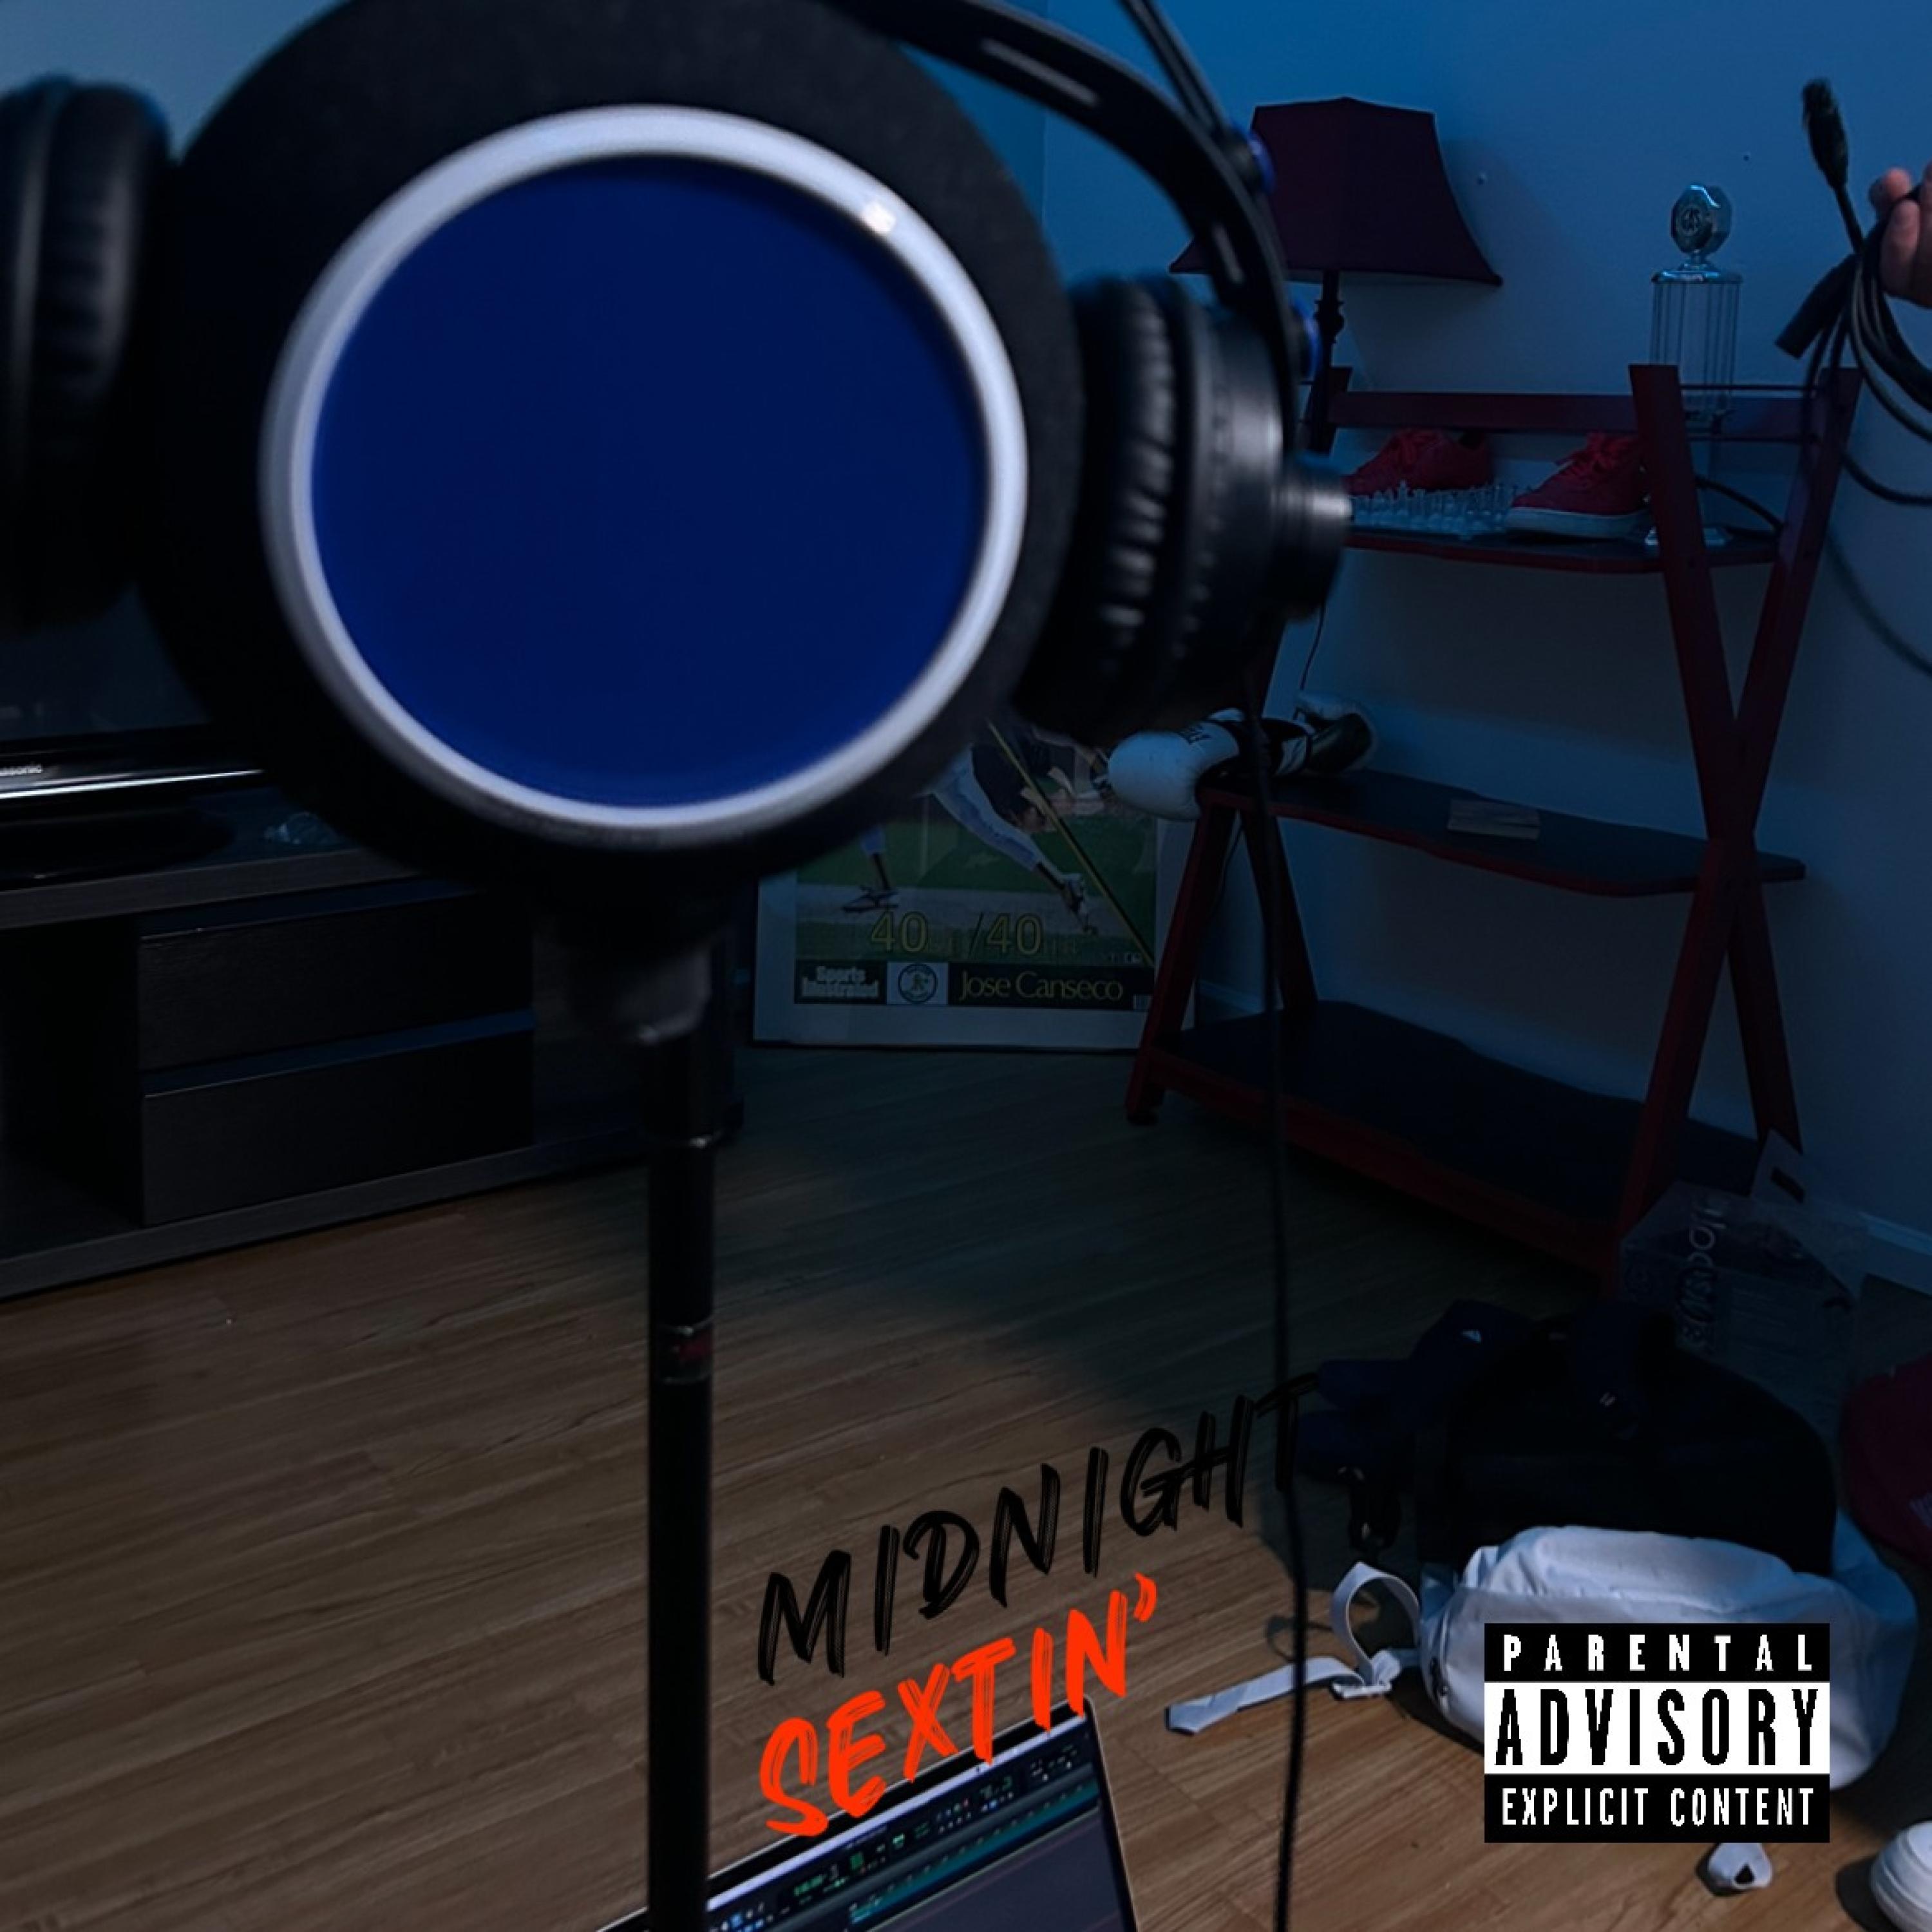 jnrvpz - MIDNIGHT SEXTIN' (feat. Timon, India & Isaiah Carter)